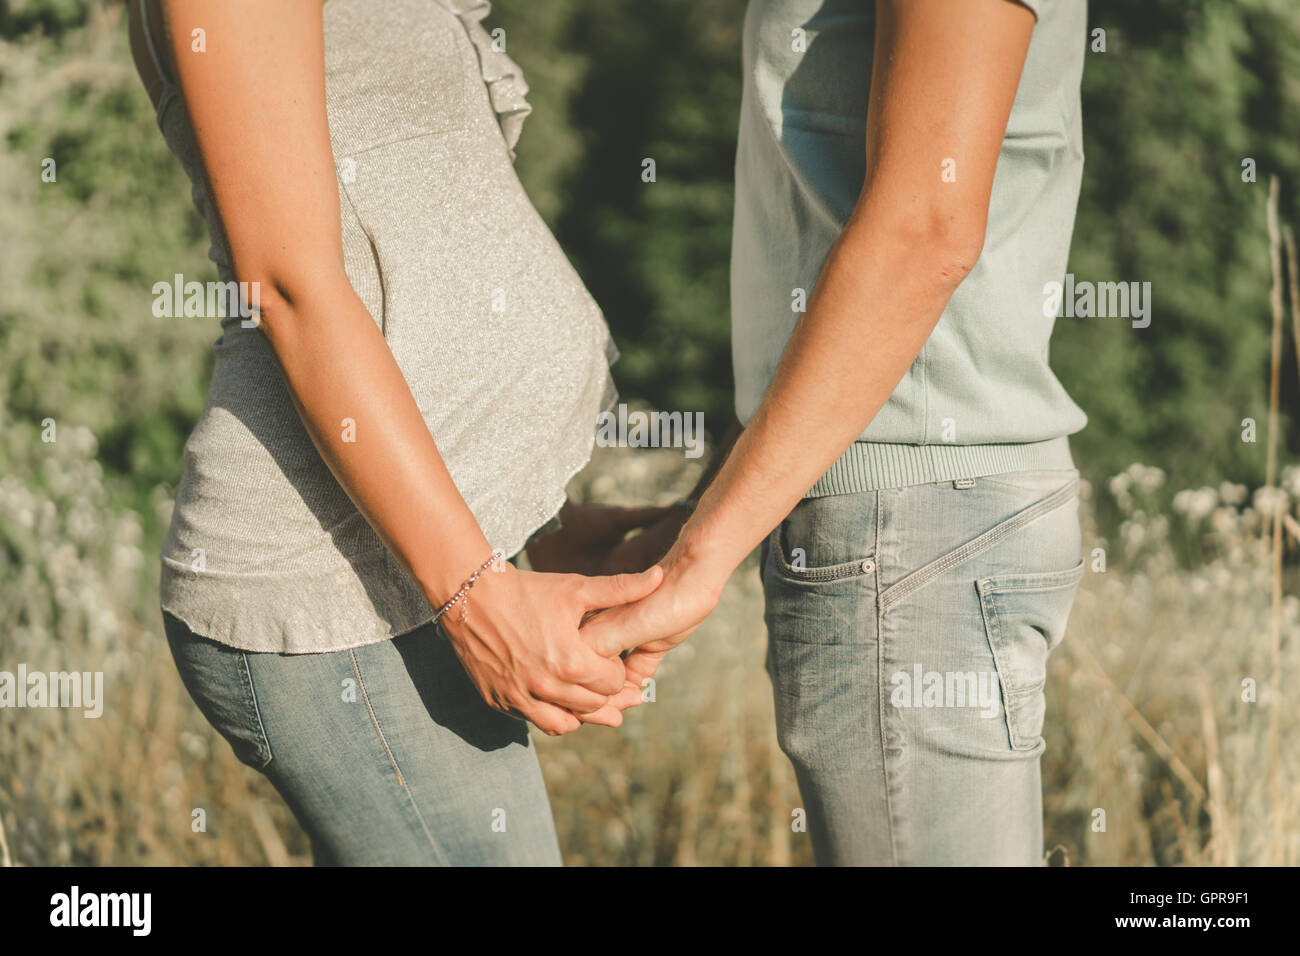 La pareja espera un hijo, tomados de la mano con el amor, uno frente a otro. Foto de stock